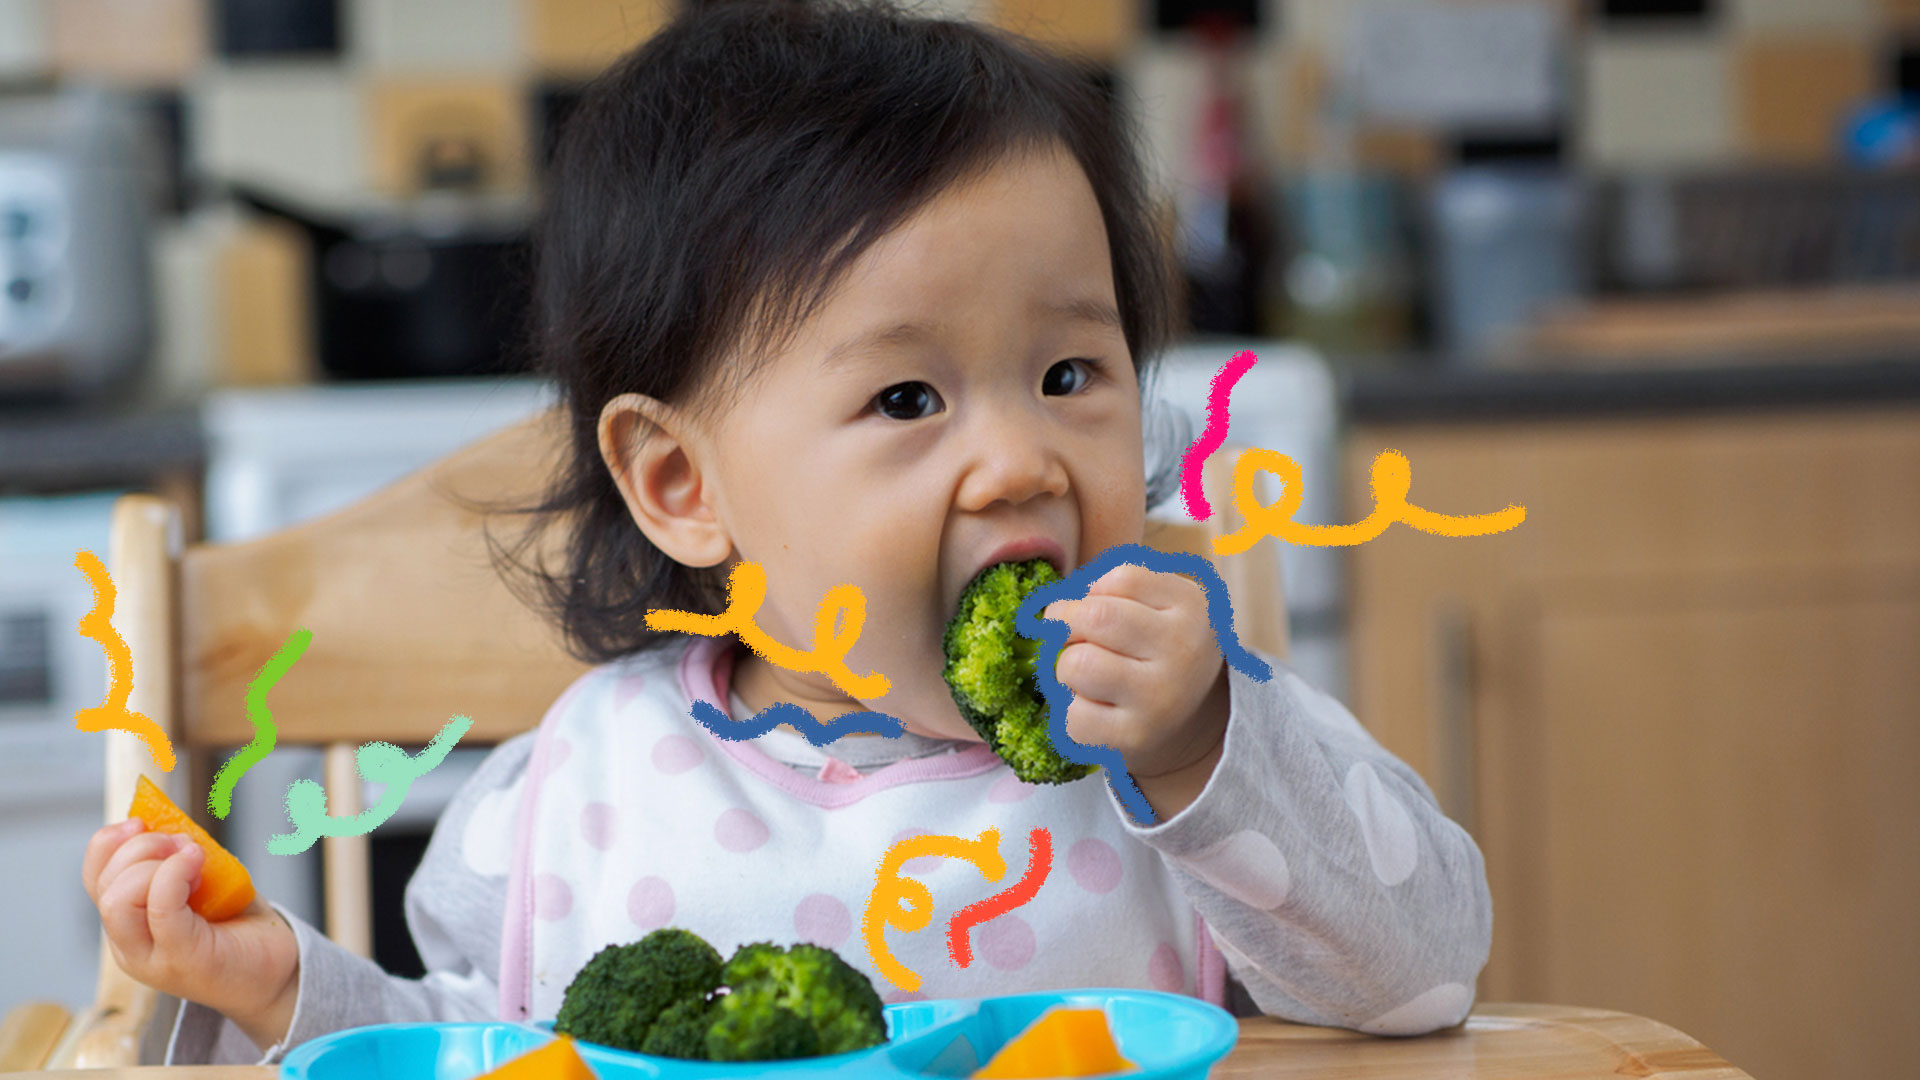 Menina oriental, de cabelos pretos, come o brocólis que está em seu prato azul claro em cima de uma mesa de jantar.